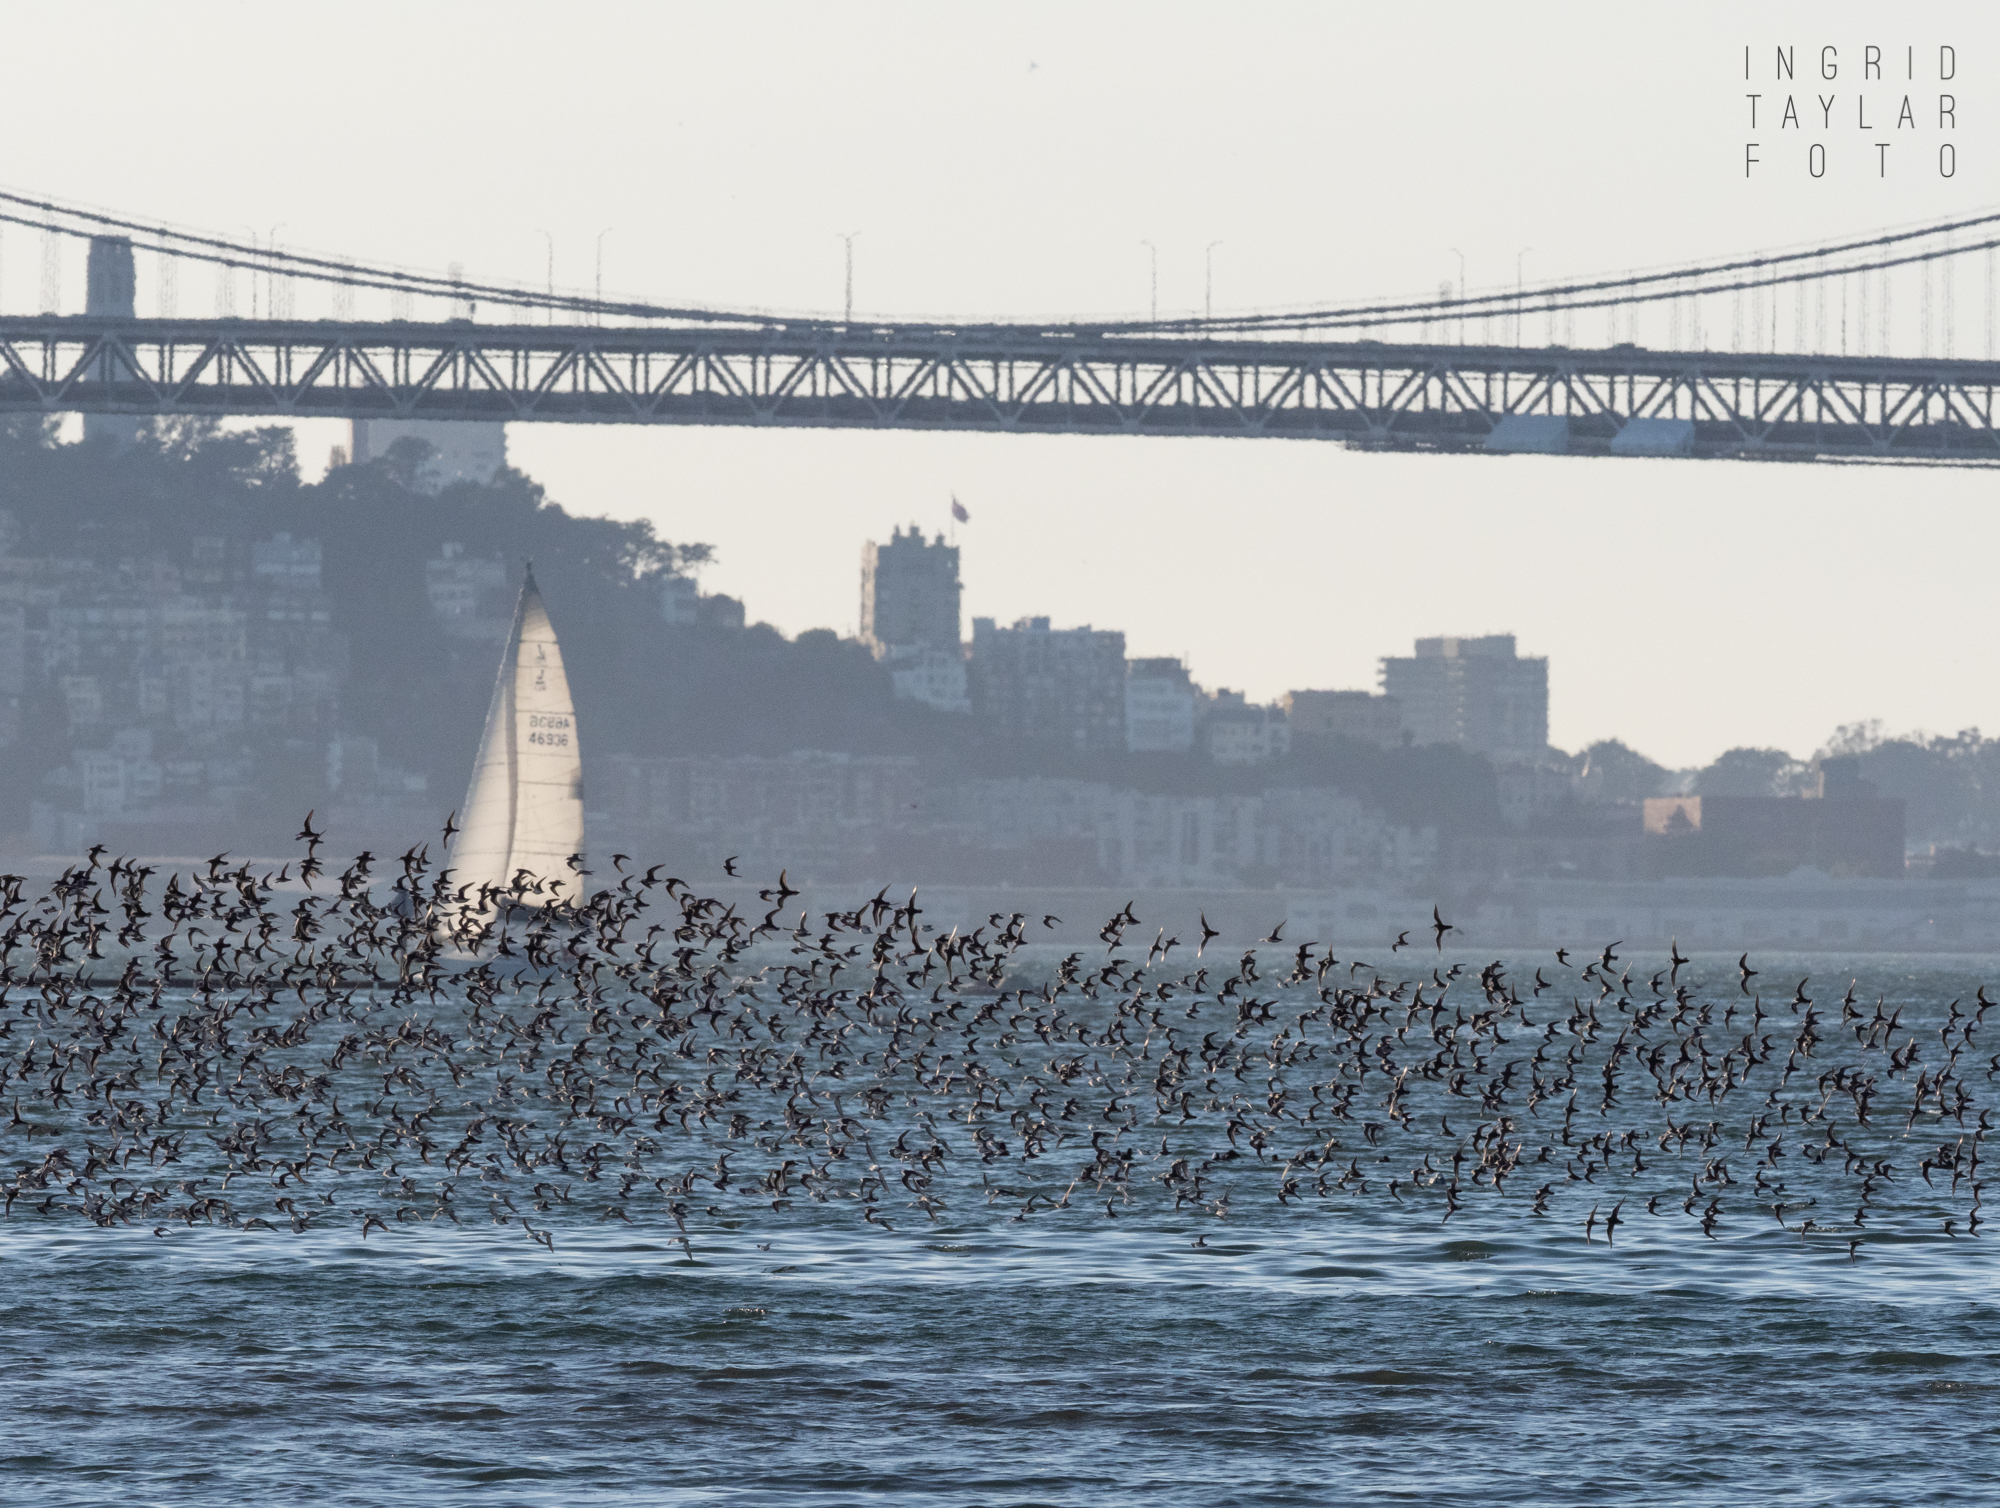 Shorebirds Flying Across San Francisco Bay